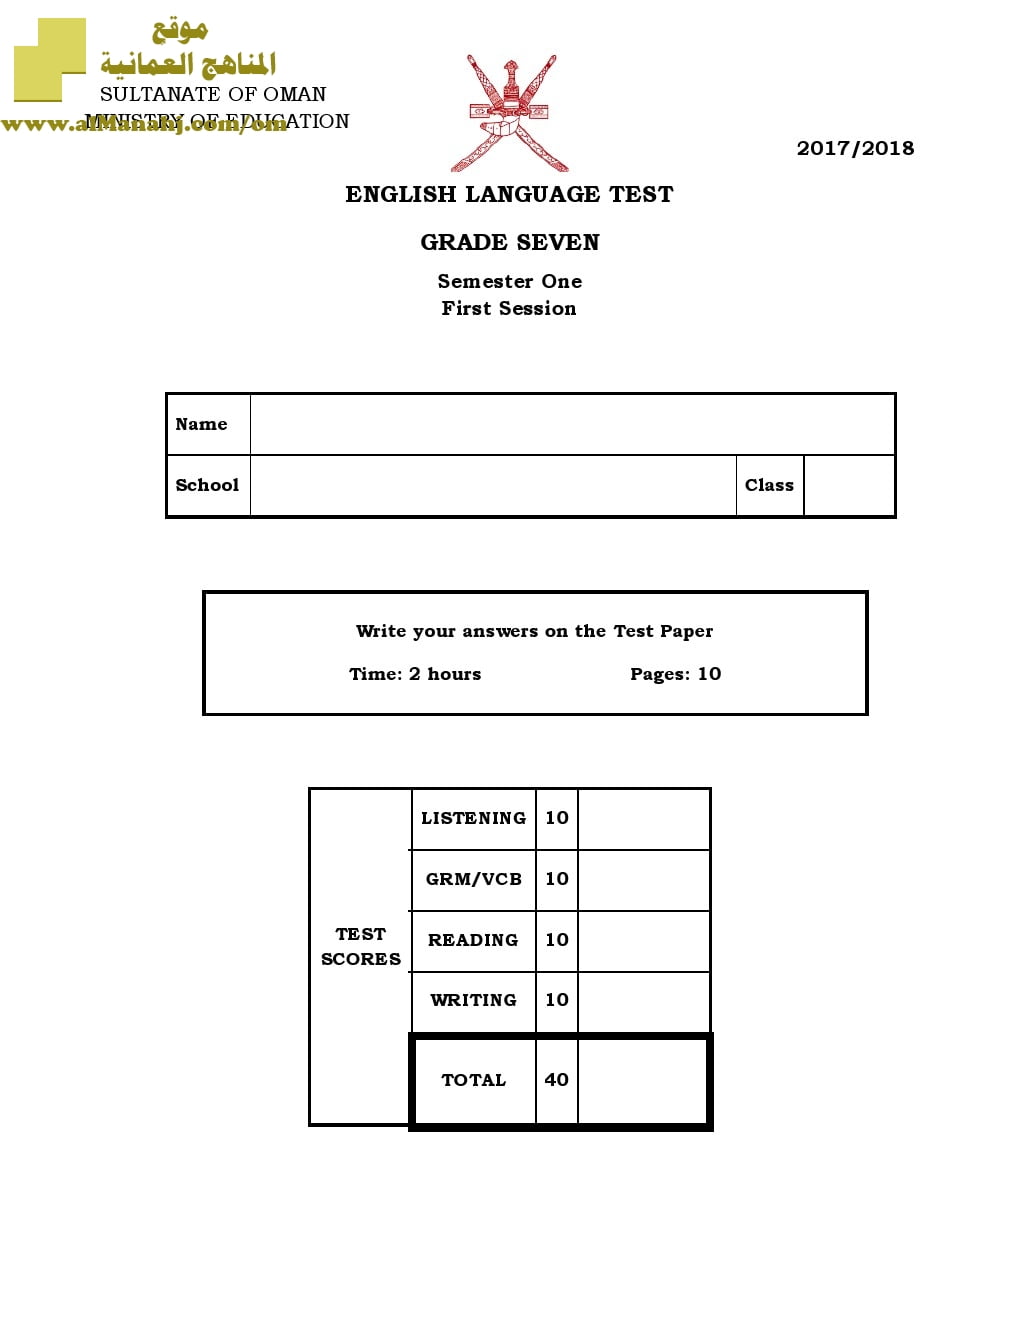 أسئلة وإجابة الامتحان الرسمي للفصل الدراسي الأول الدور الأول والثاني (لغة انجليزية) السابع